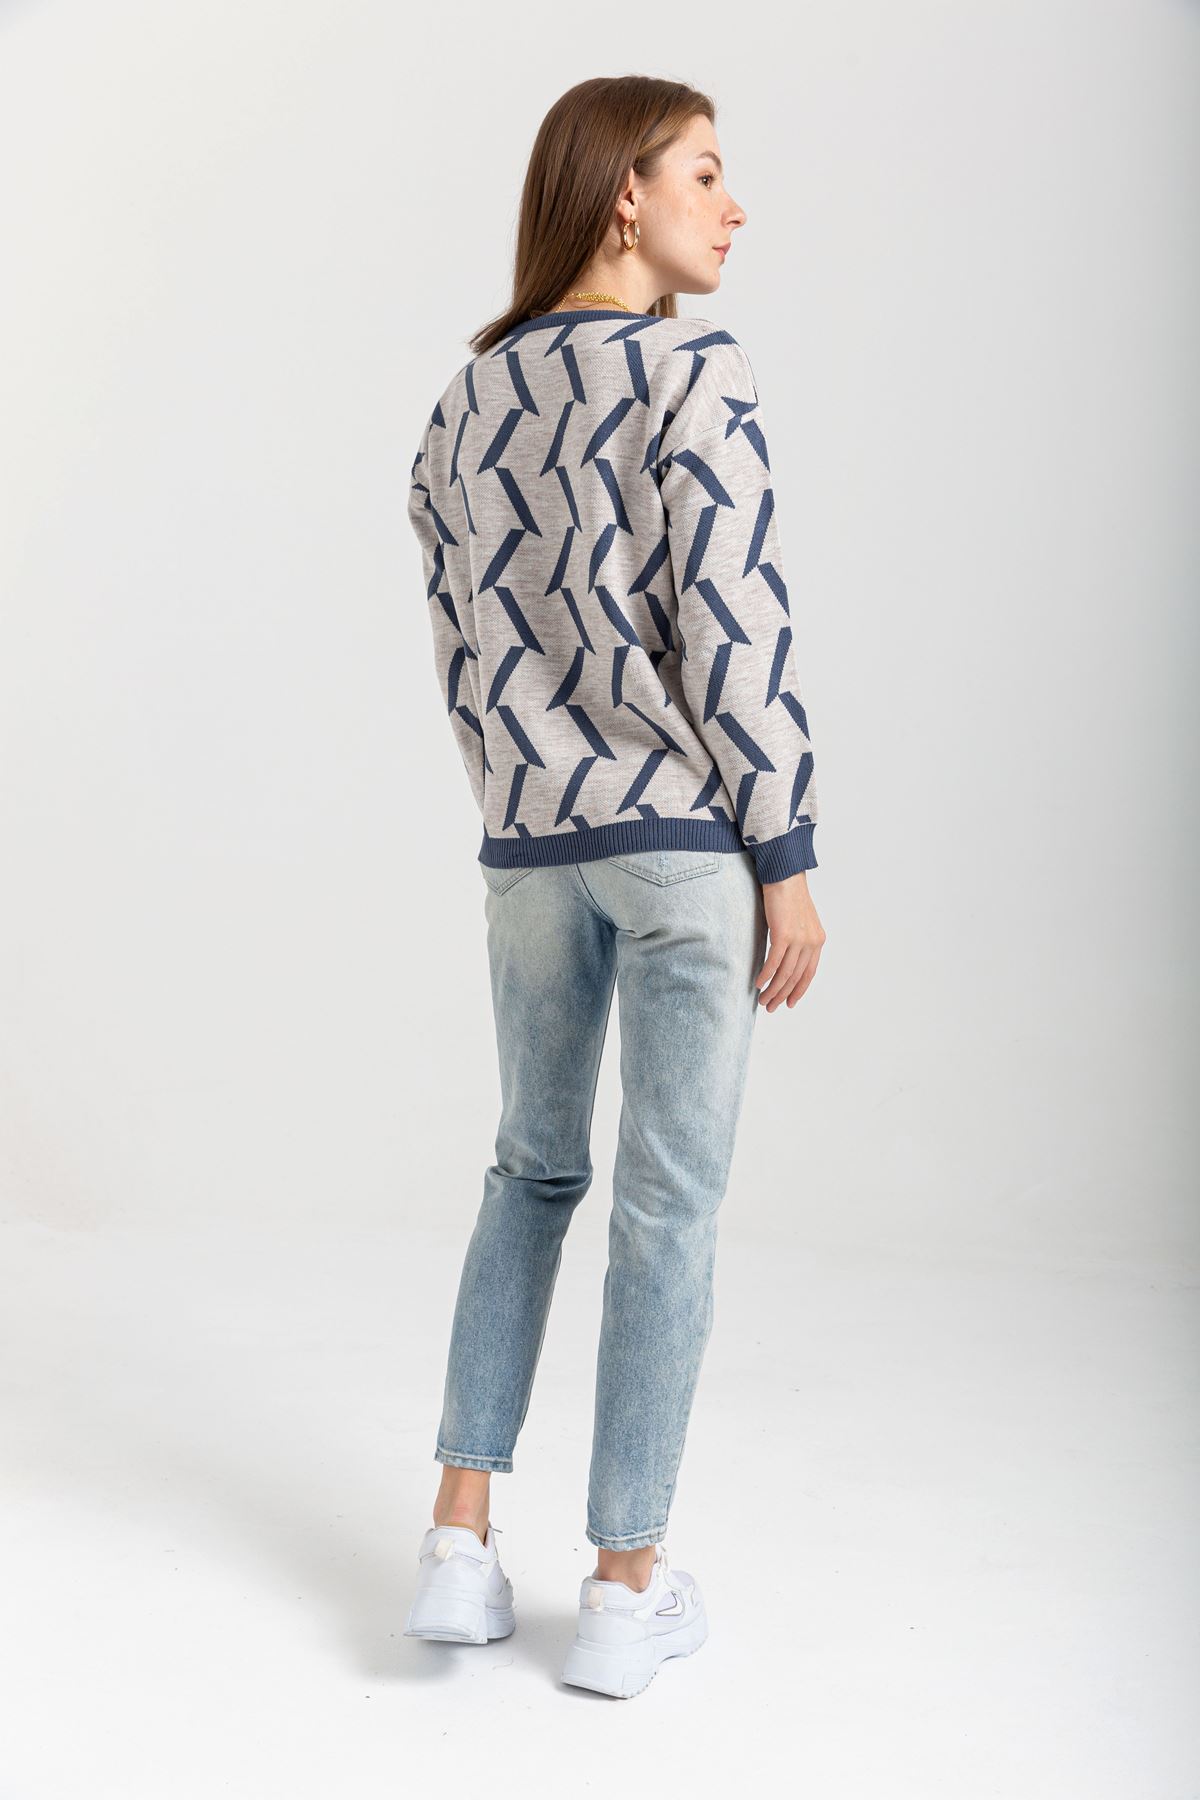 Knitwear Fabric Long Sleeve Bicycle Collar Geometric Print Women Sweater - Grey